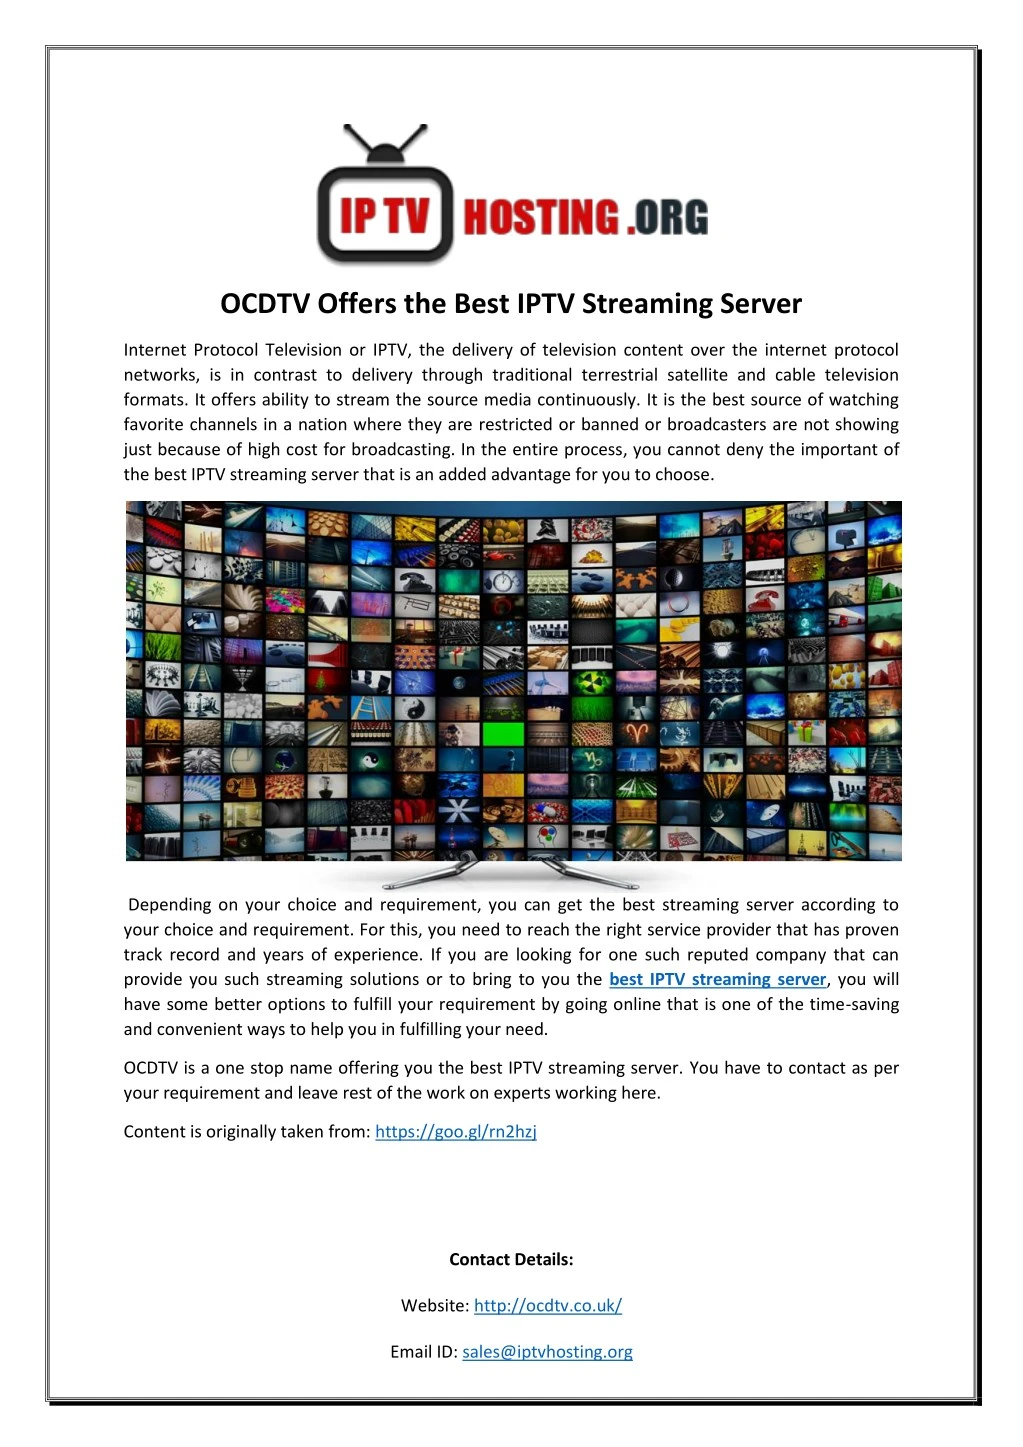 ocdtv offers the best iptv streaming server